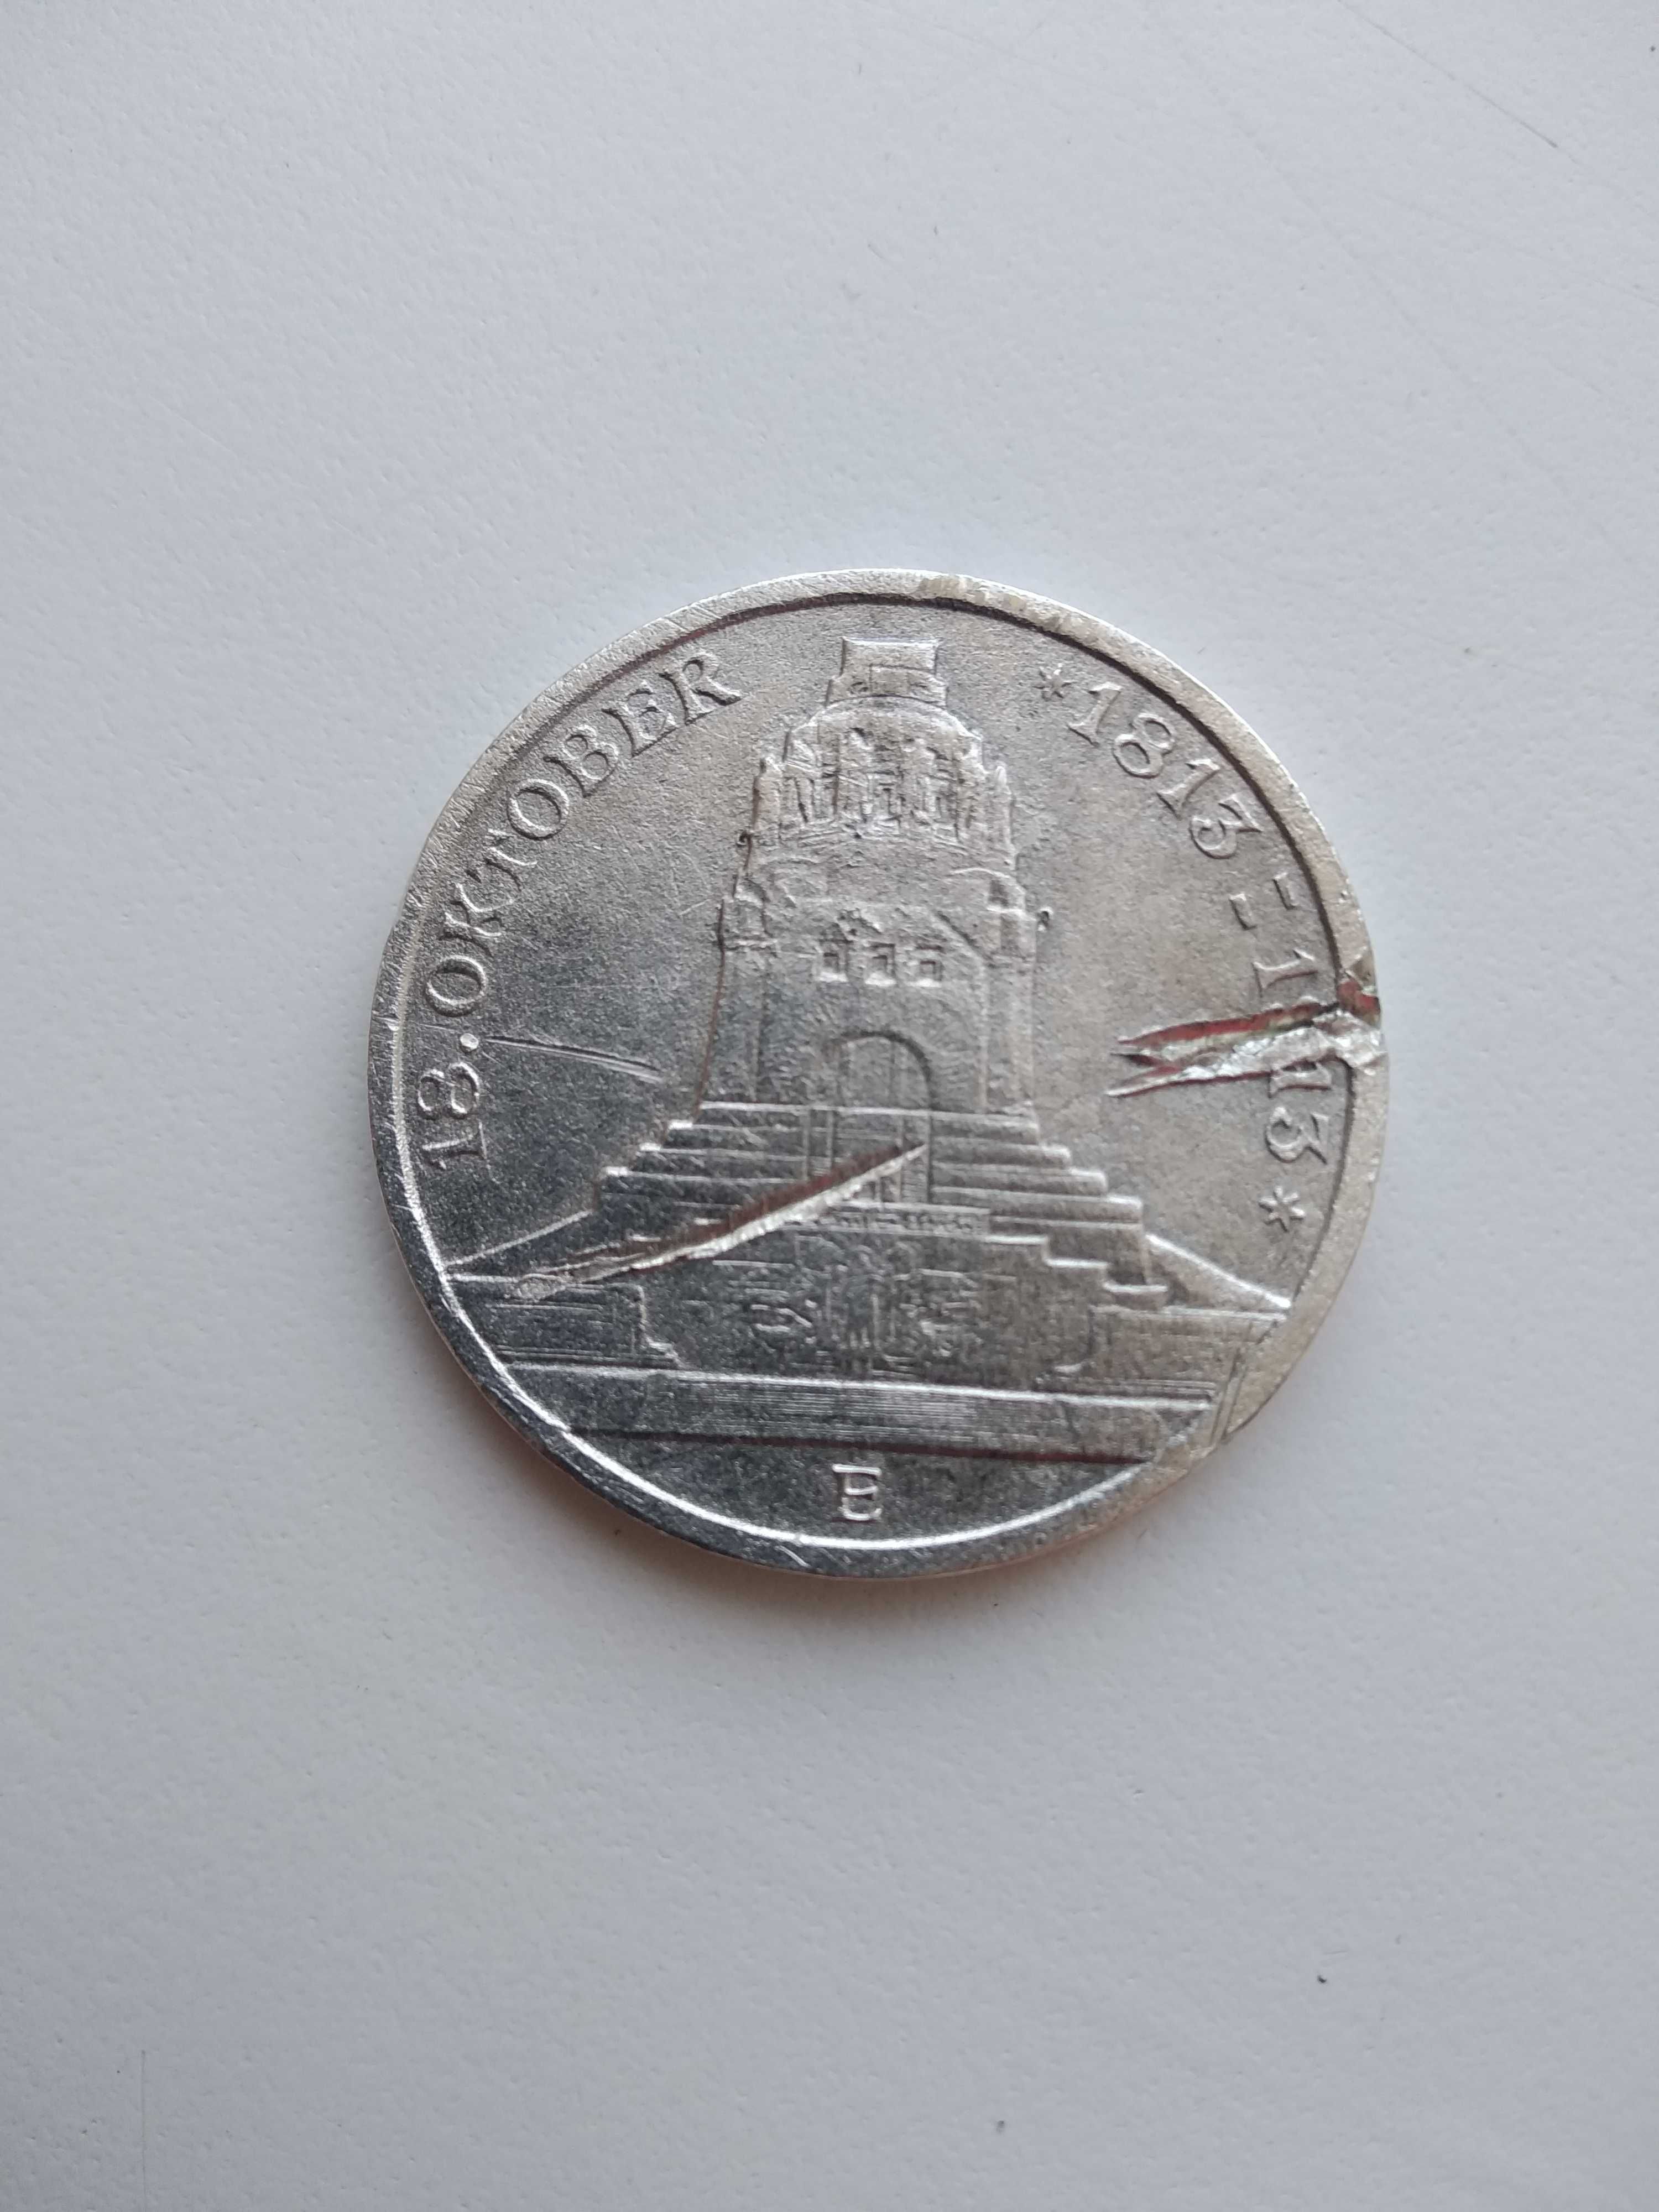 Срібна монета 3 марки 1913 року